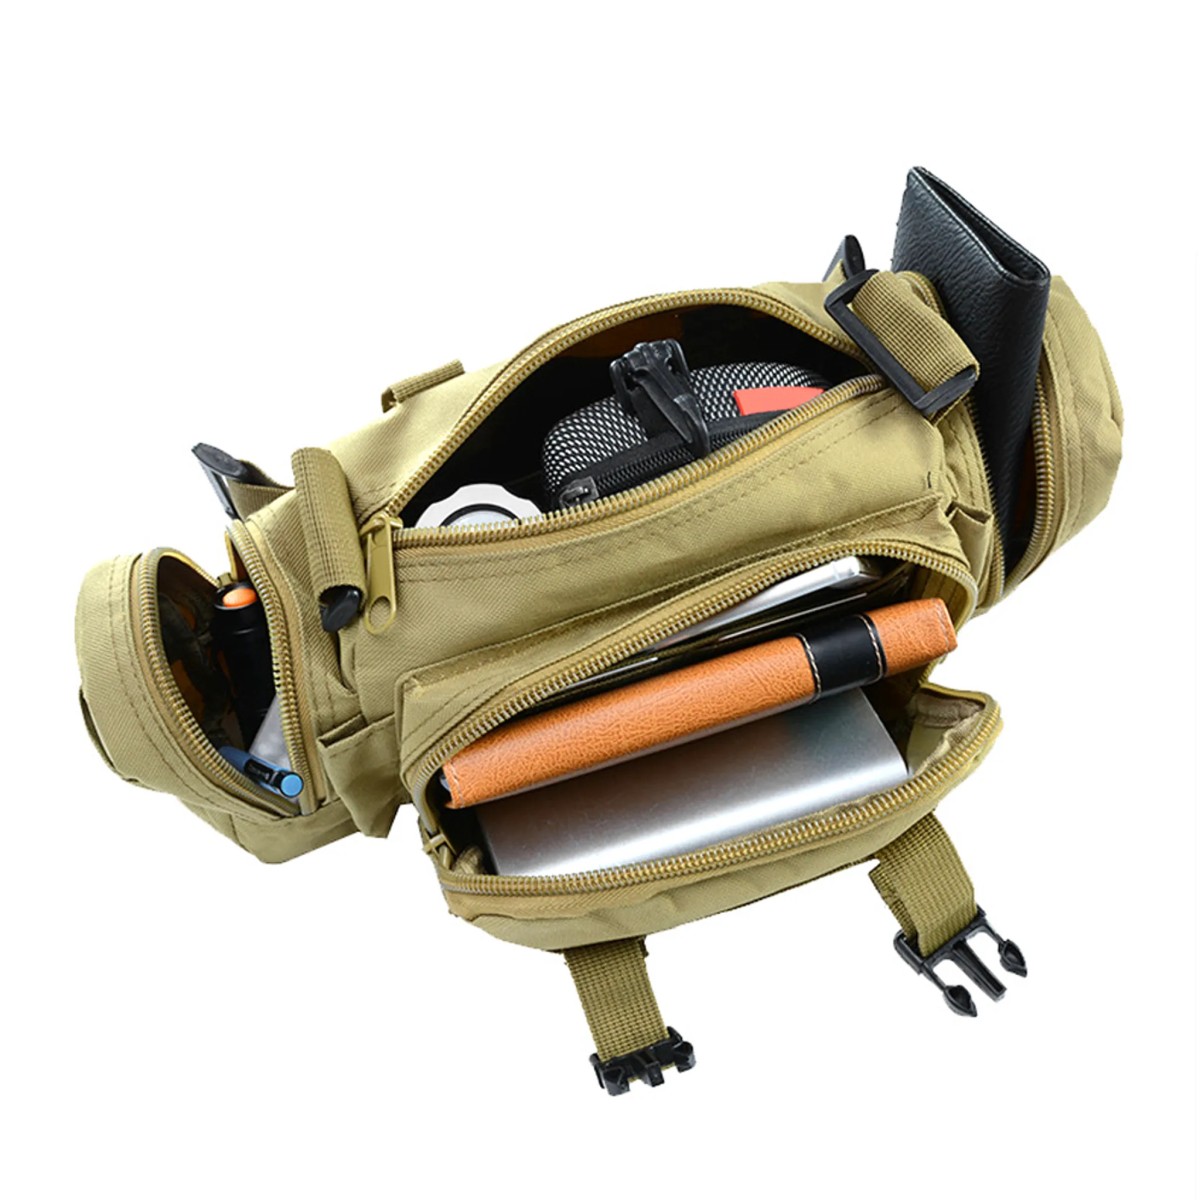 EEEKit Taktische Hüfttaschen Herren, 3 Pack Molle Tasche Wasserdicht  Kompakte Tactical Molle Pouche EDC Utility Bauchtasche Hüfttasche mit 3  Haken für